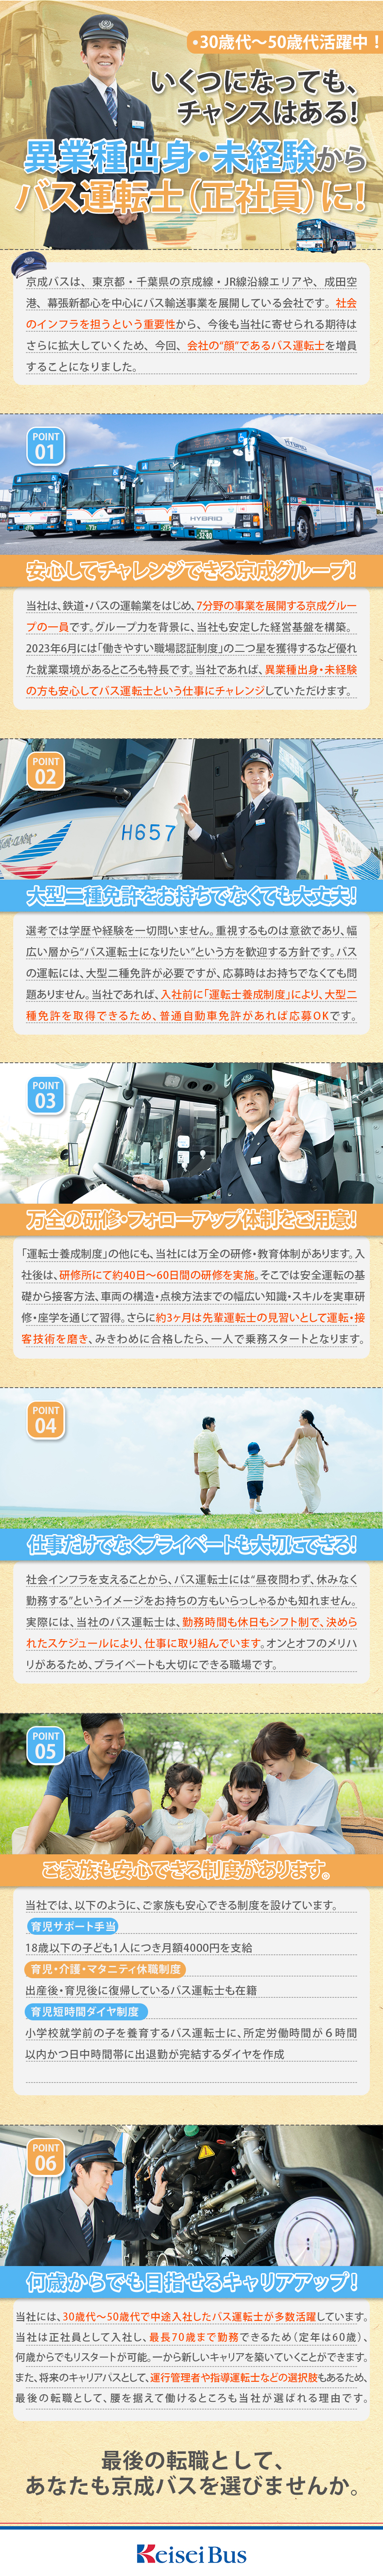 京成バス株式会社 からのメッセージ